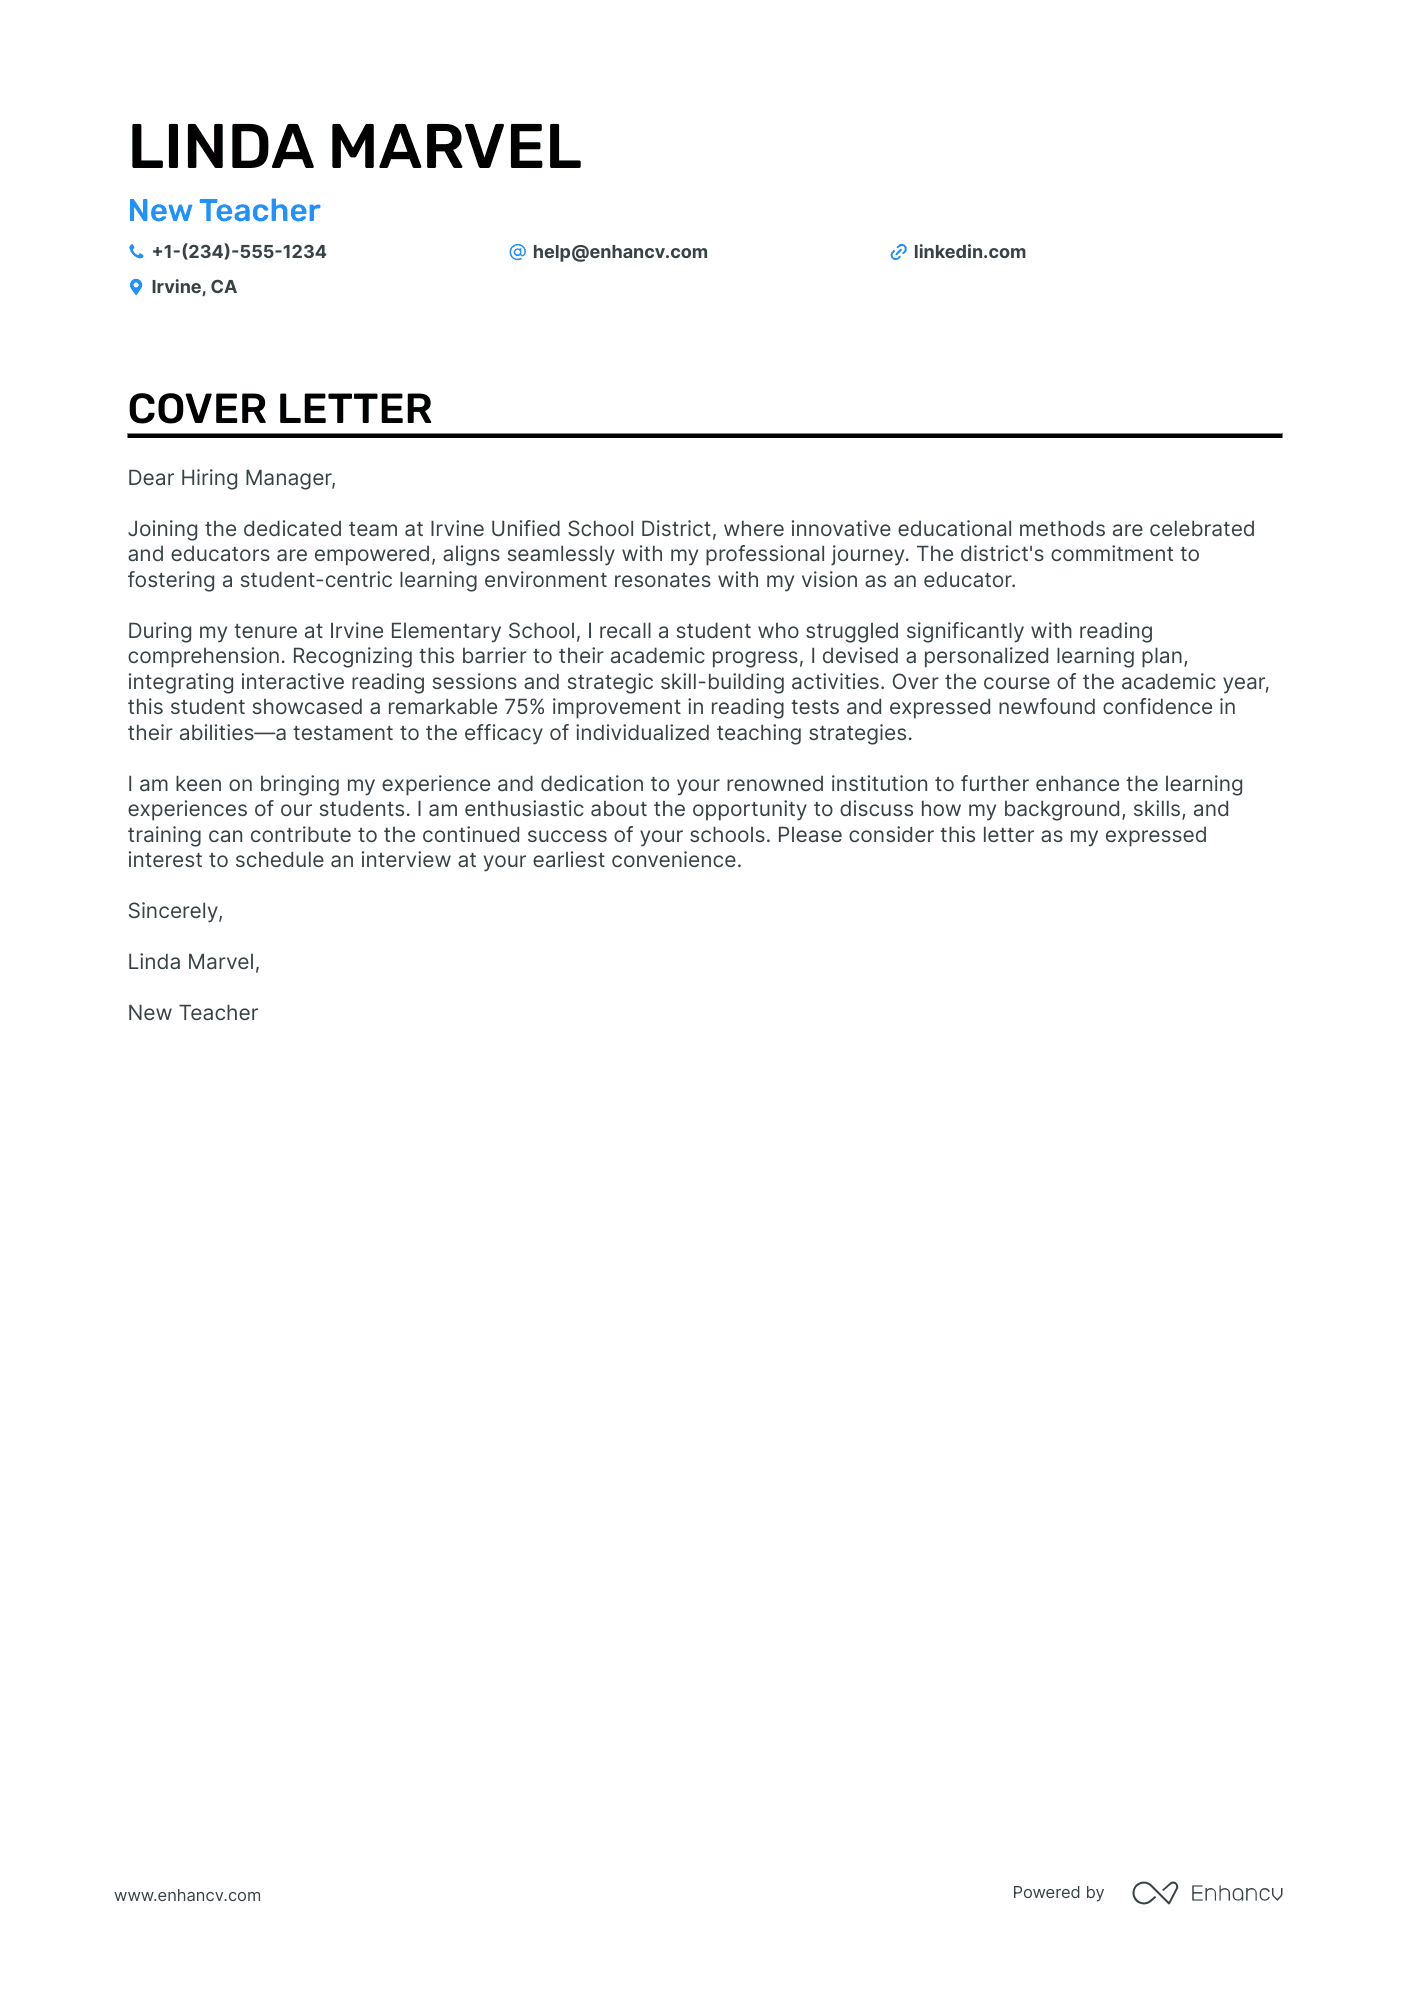 New Teacher cover letter